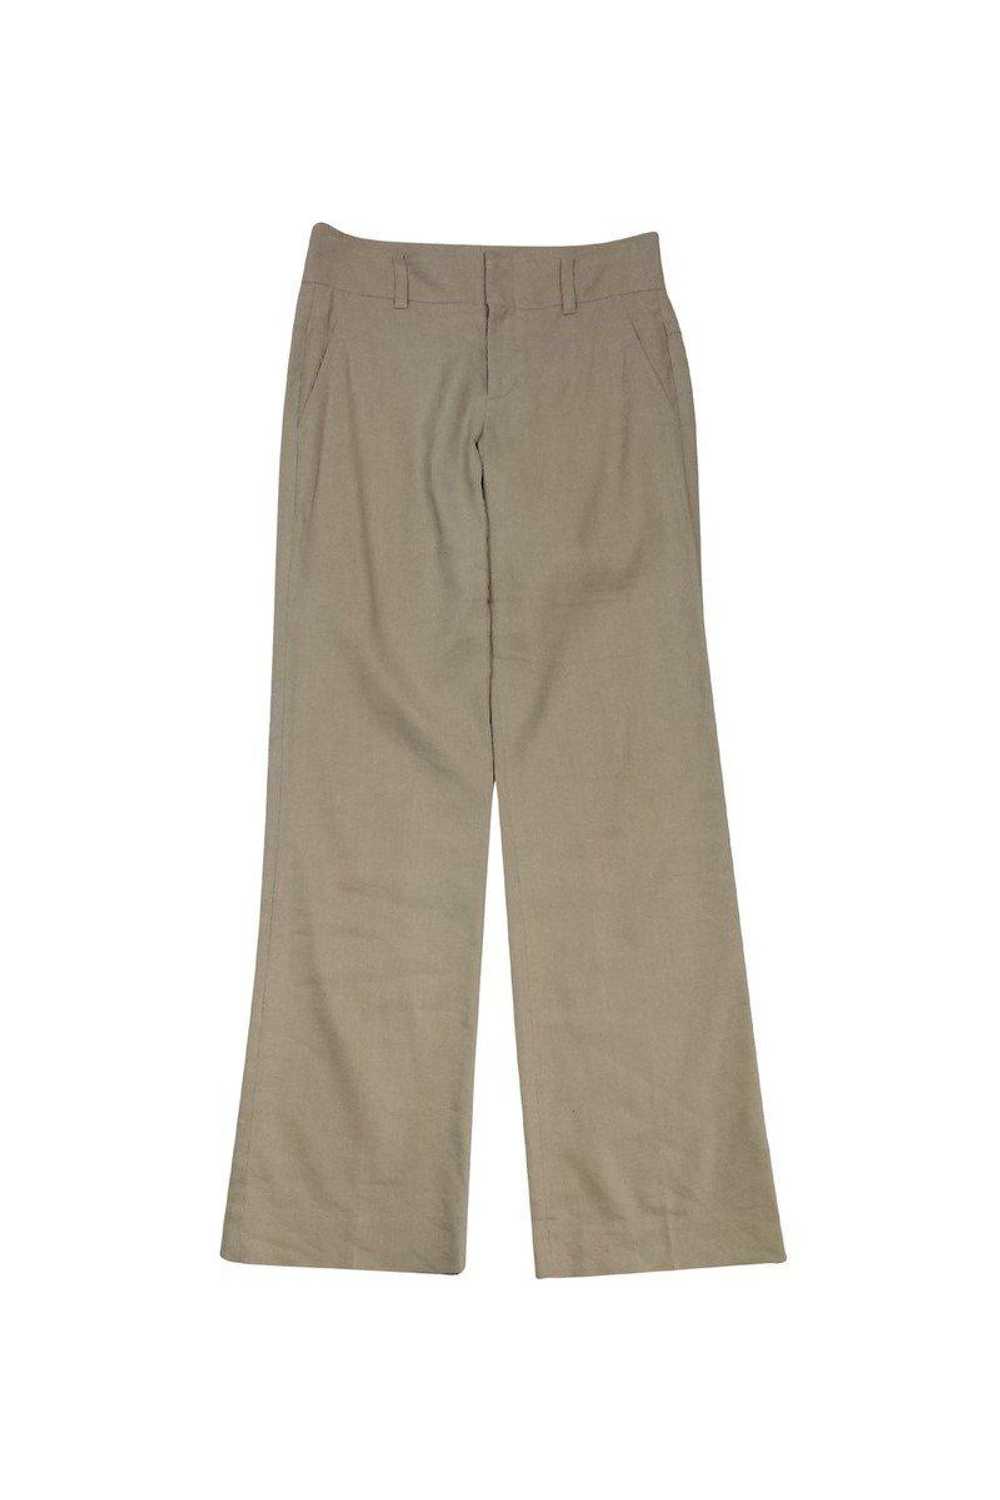 Vince - Tan Linen Trousers Sz 2 - image 1